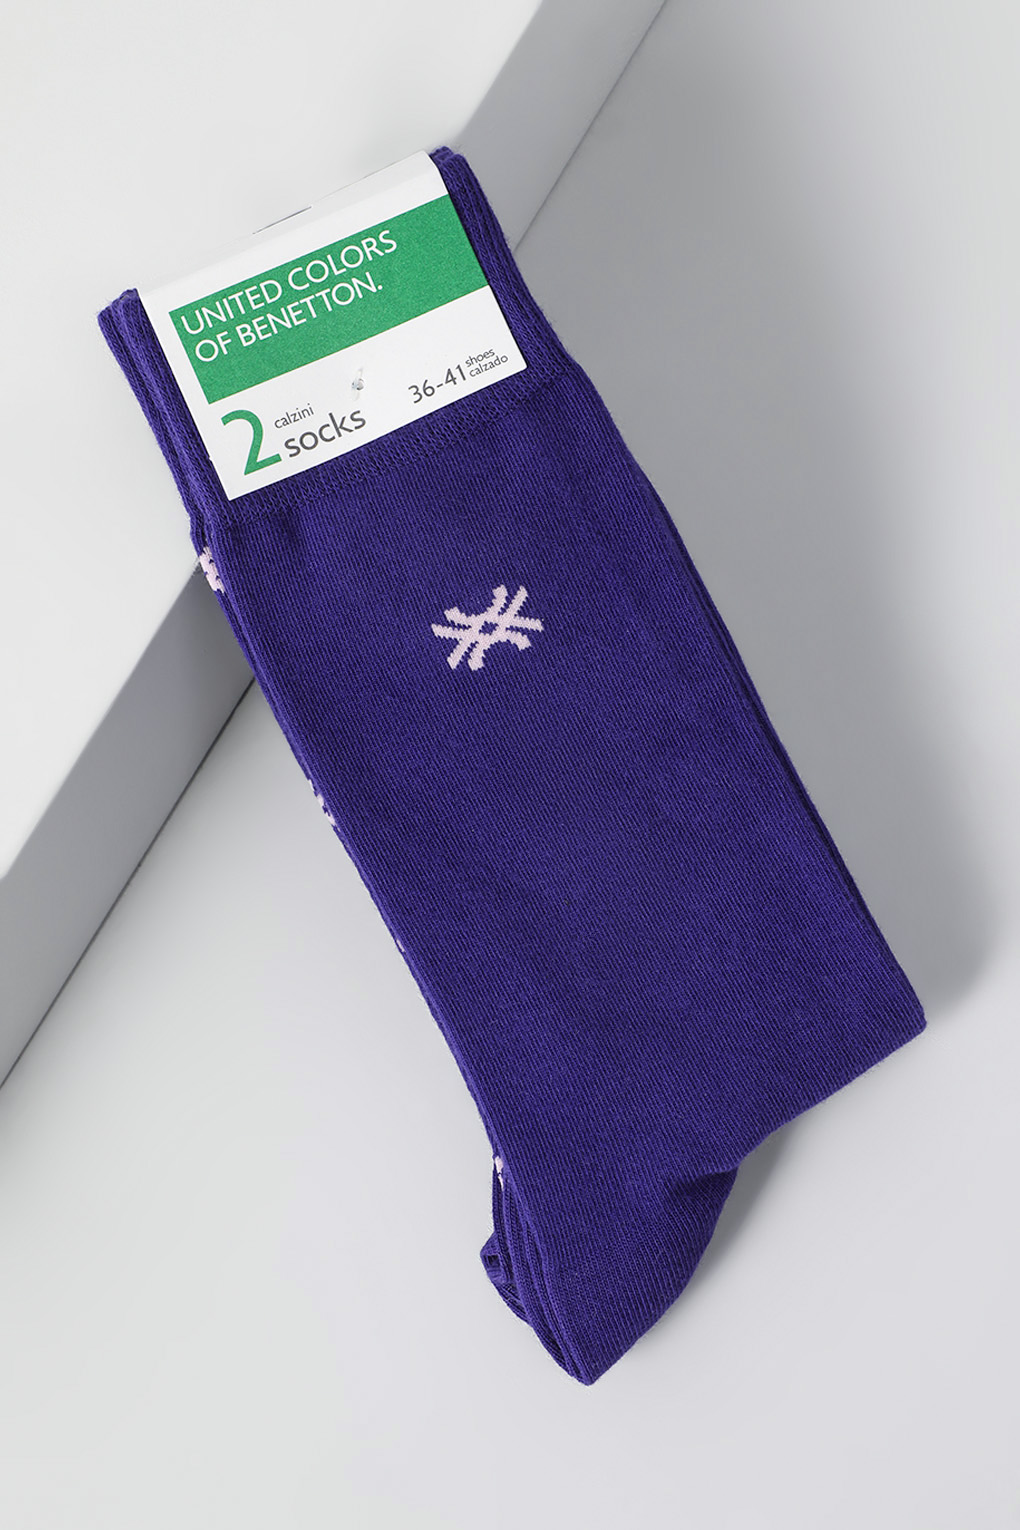 Комплект носков женских Benetton Undercolors 6AO32701P фиолетовых 36-38